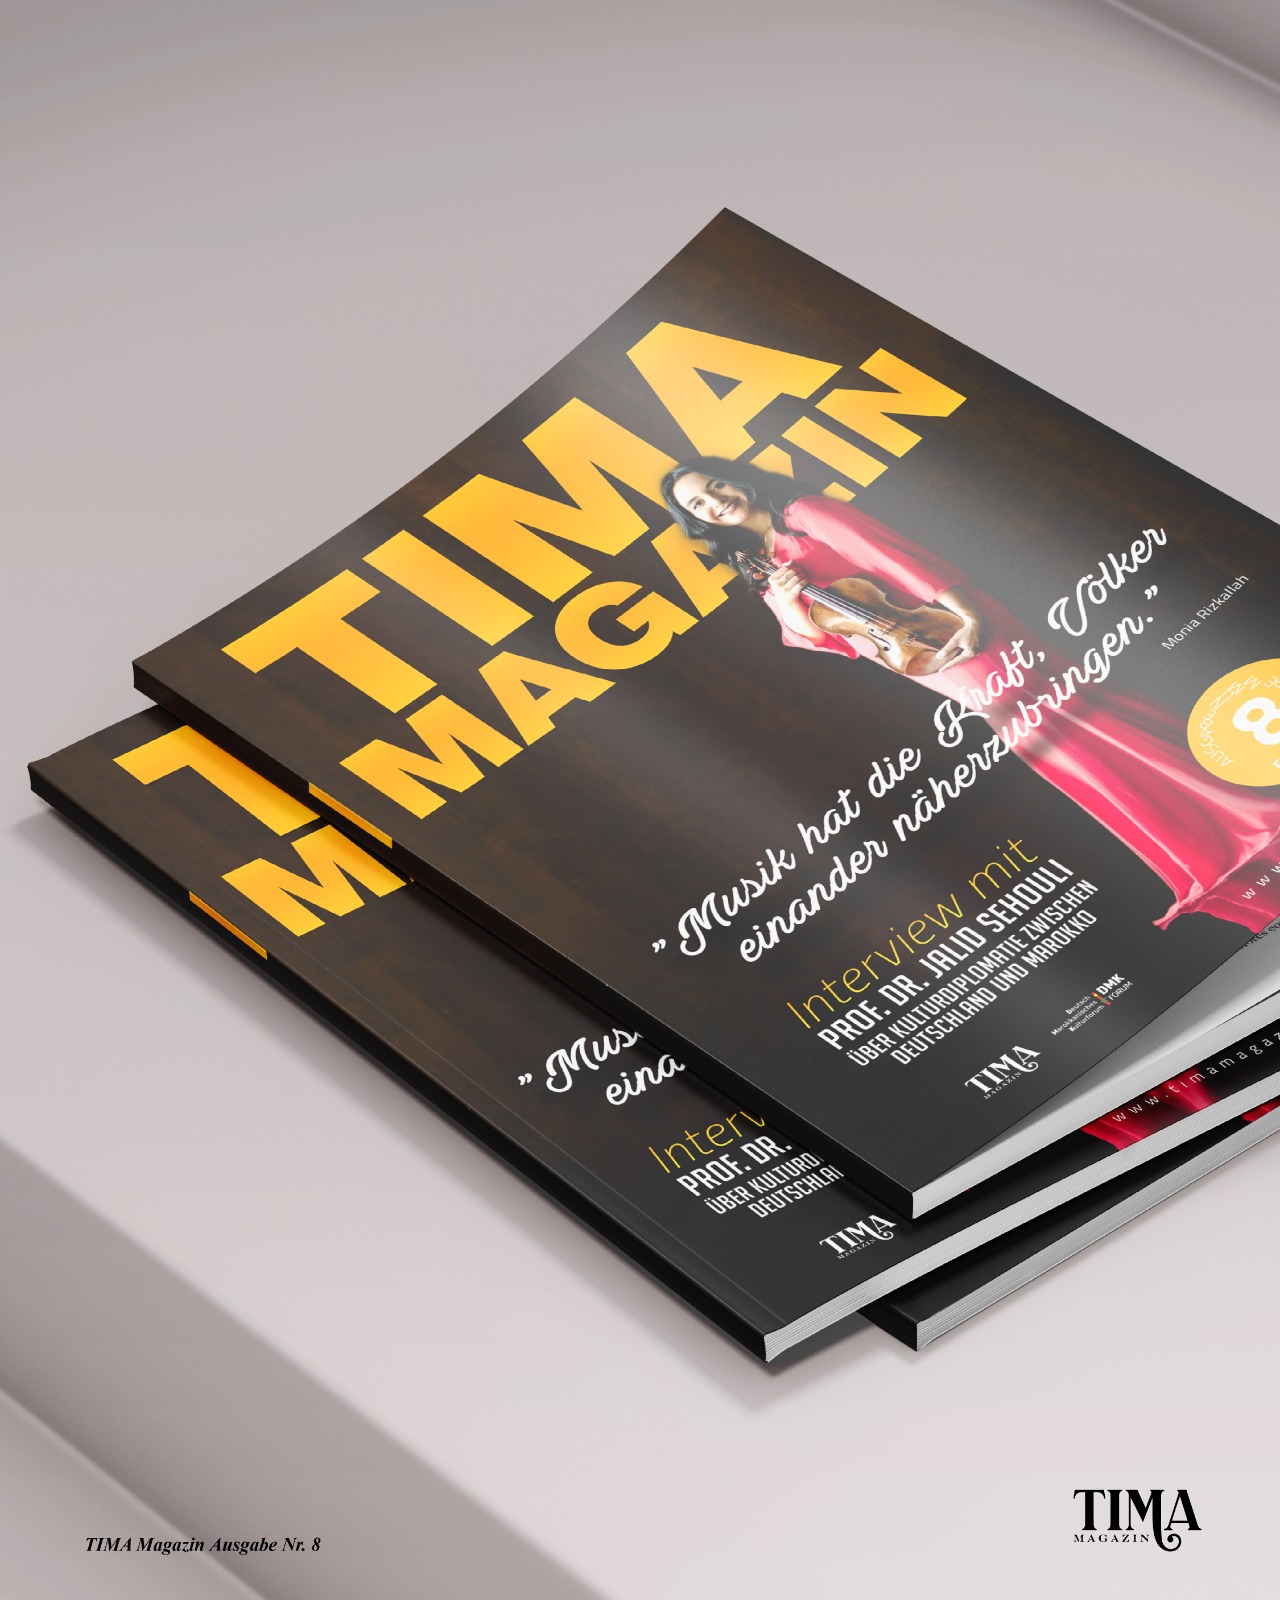 Die aktuelle Ausgabe von TIMA Magazin